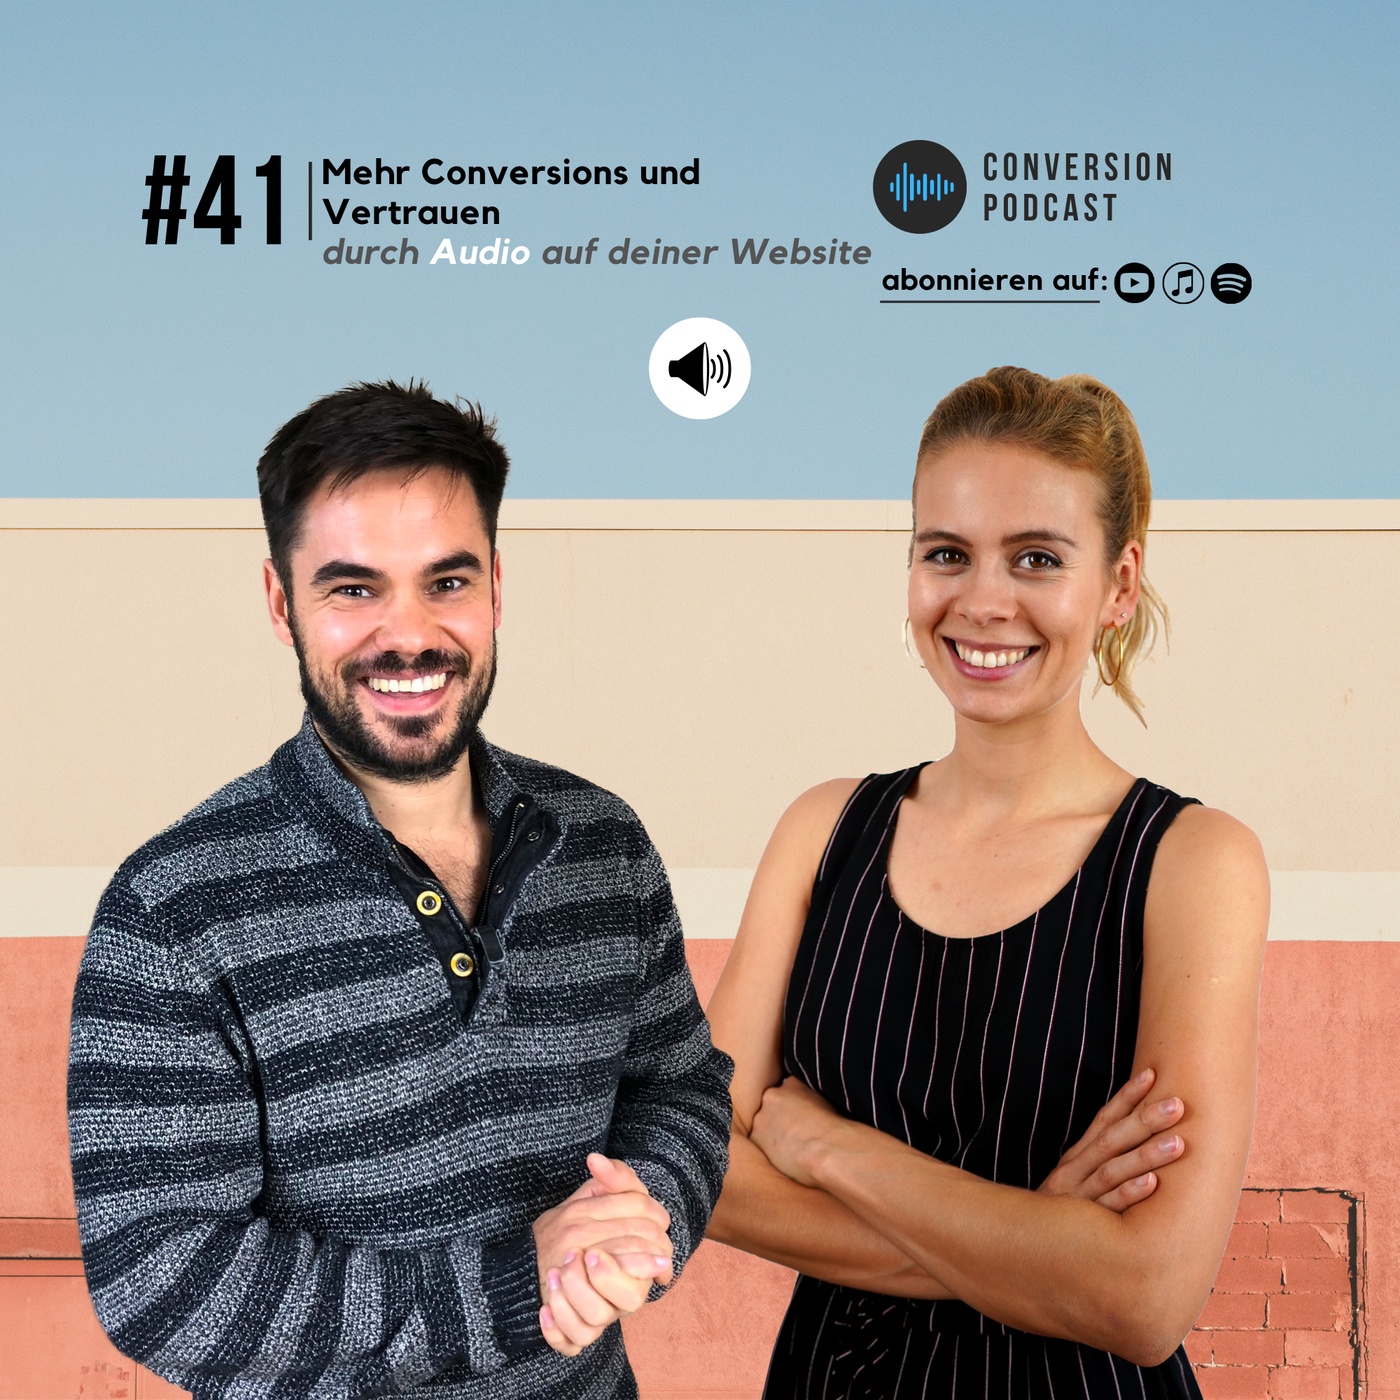 Mehr Conversions und Vertrauen durch Audio auf deiner Website | #41 Conversion Podcast